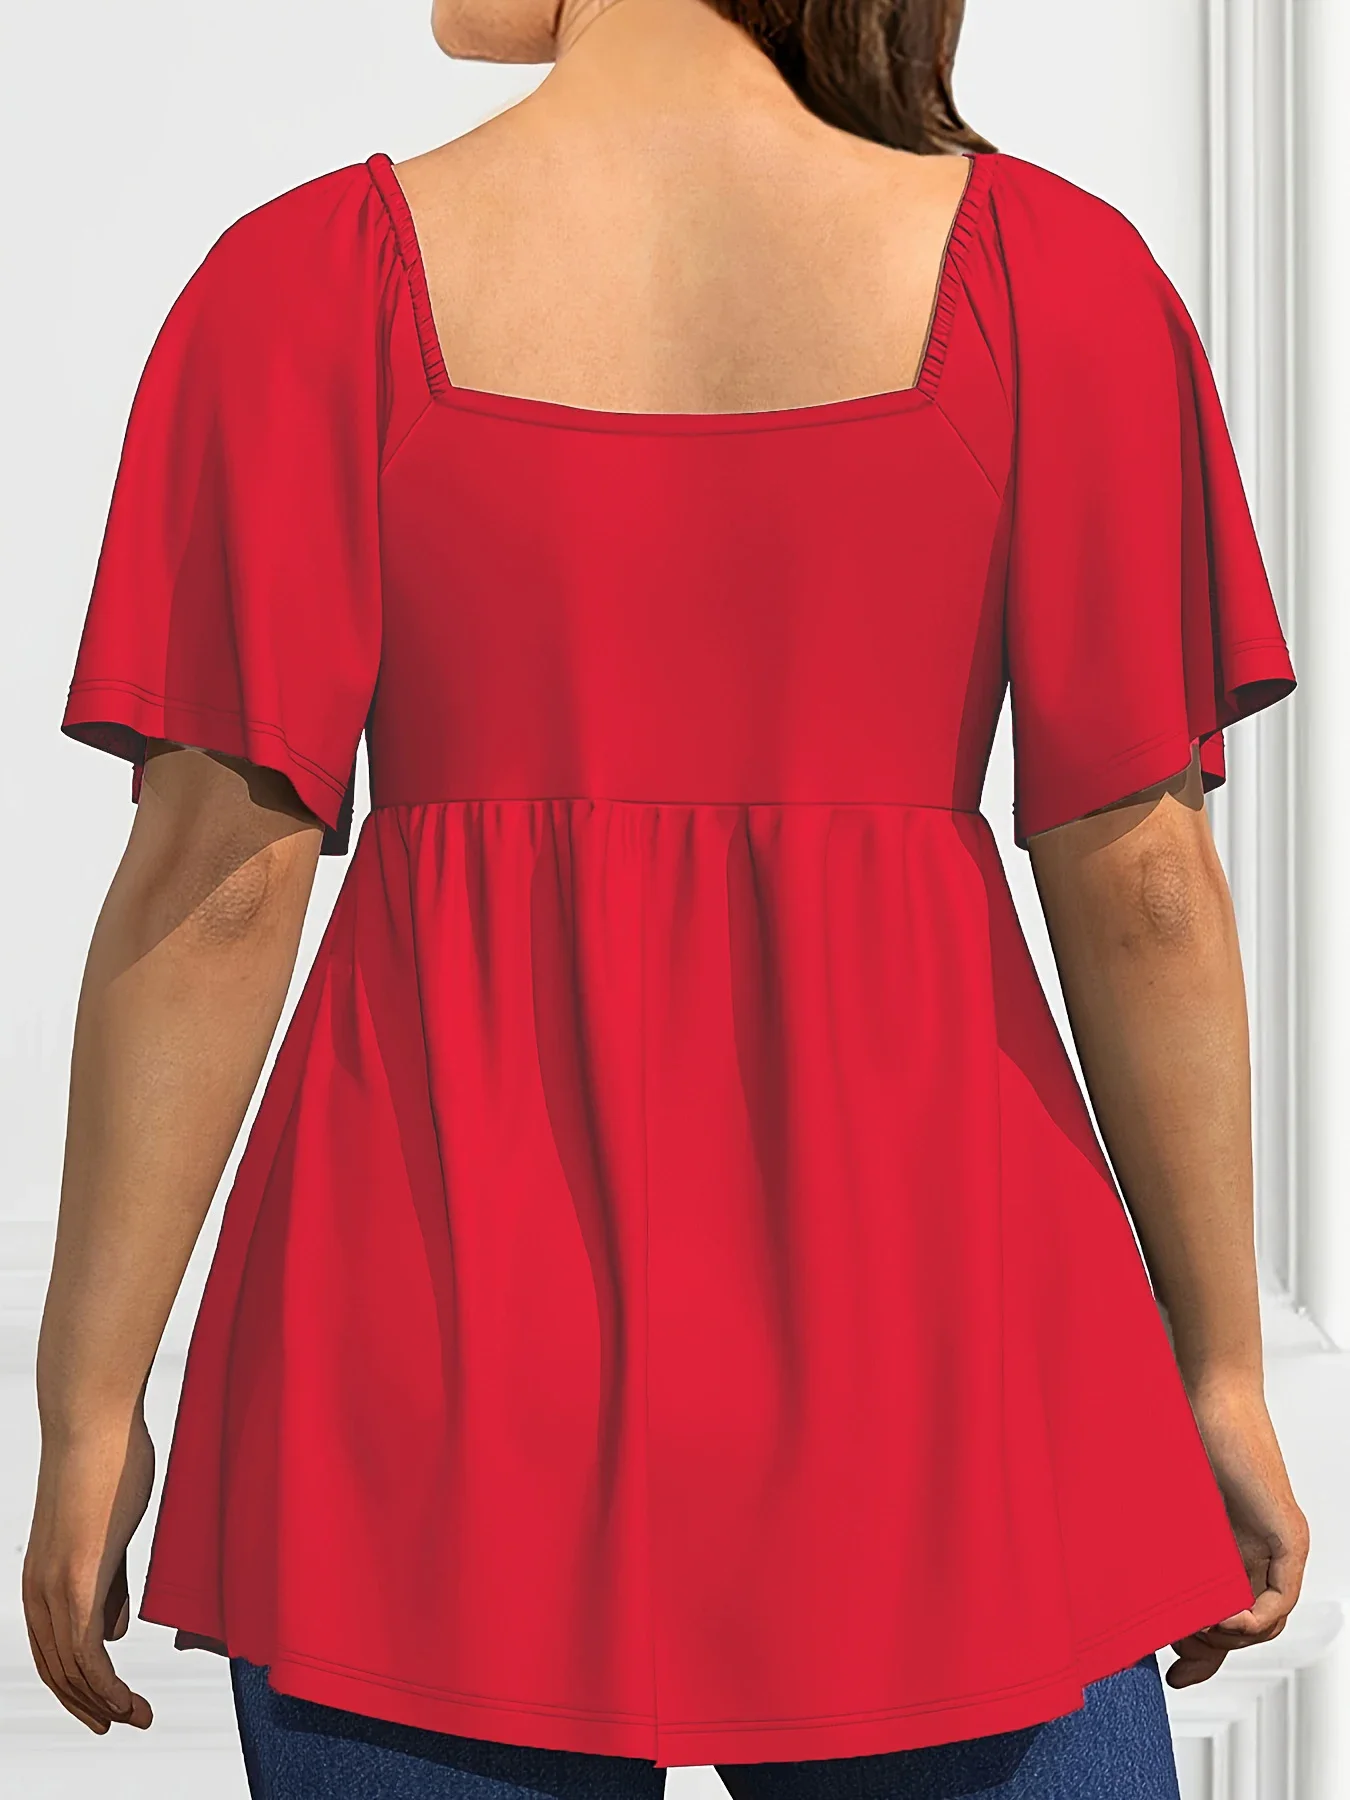 Женская плиссированная блузка с квадратным вырезом, коротким рукавом и кулиской